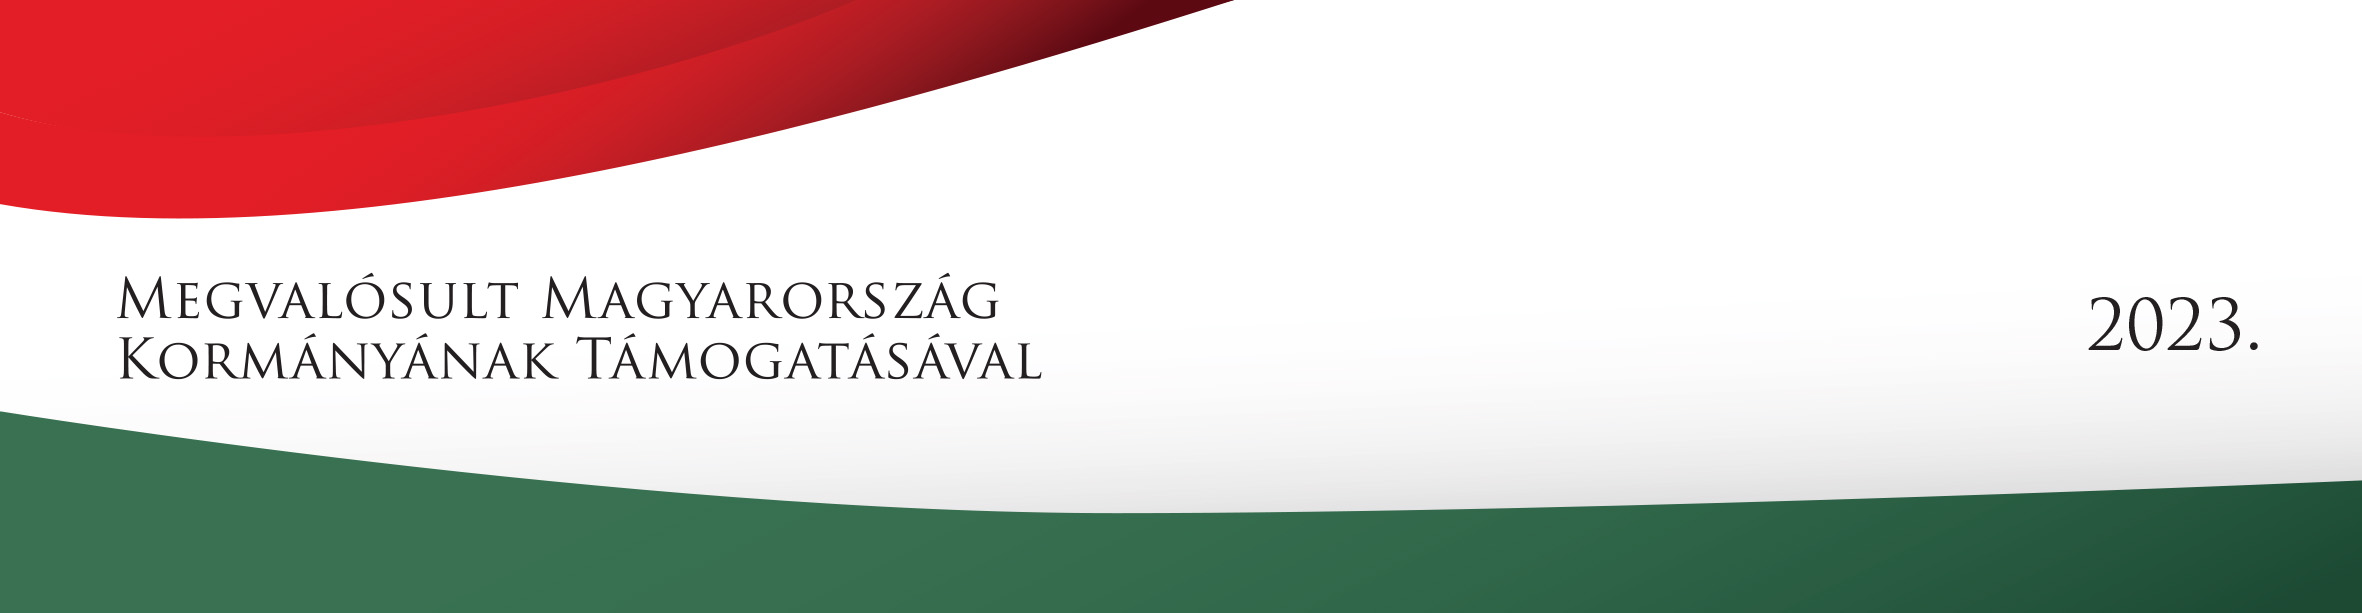 Megvalósult Magyarország Kormányának Támogatásával 2023 logó